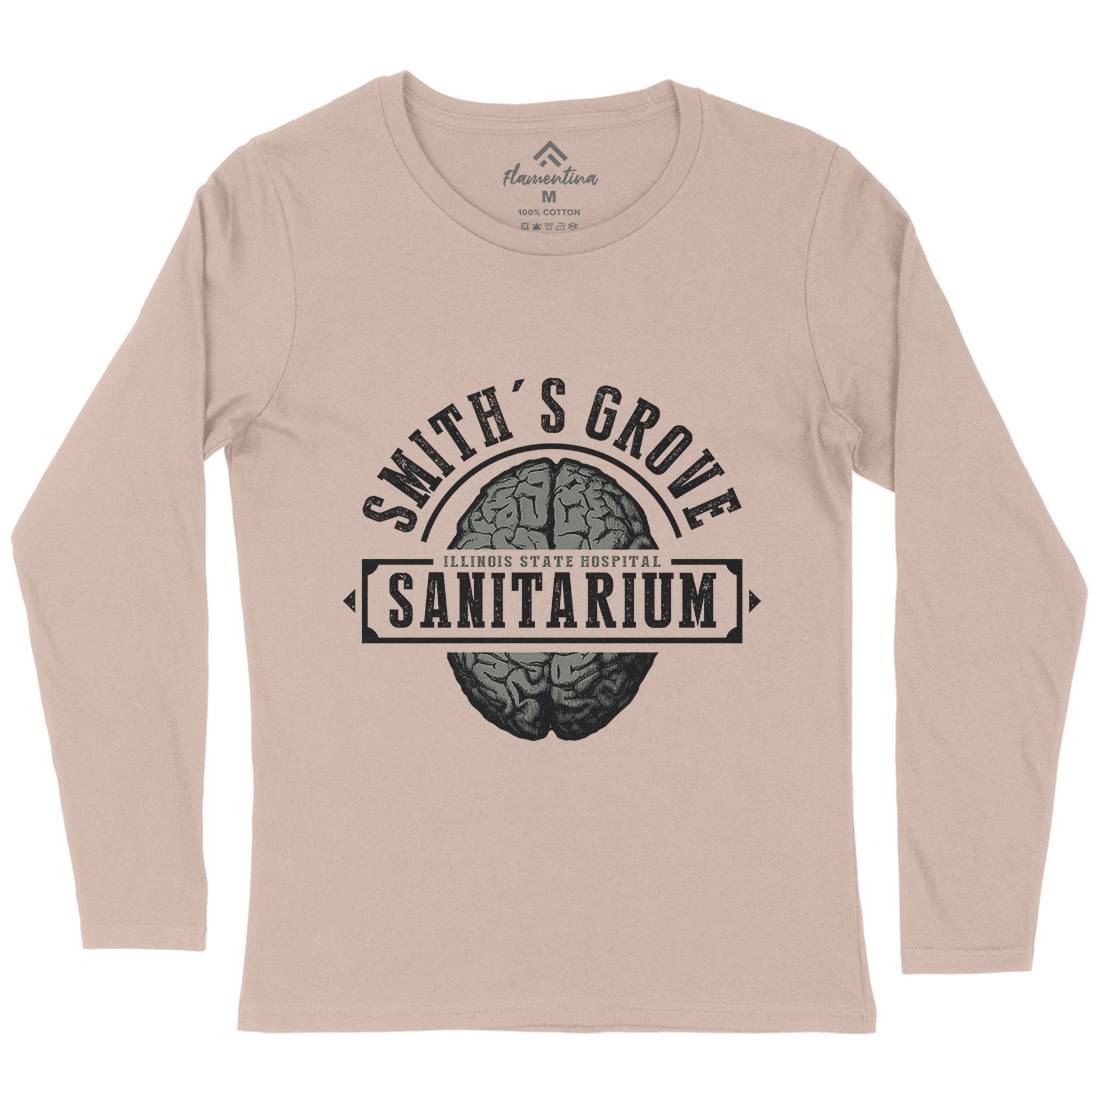 Smiths Grove Womens Long Sleeve T-Shirt Horror D331